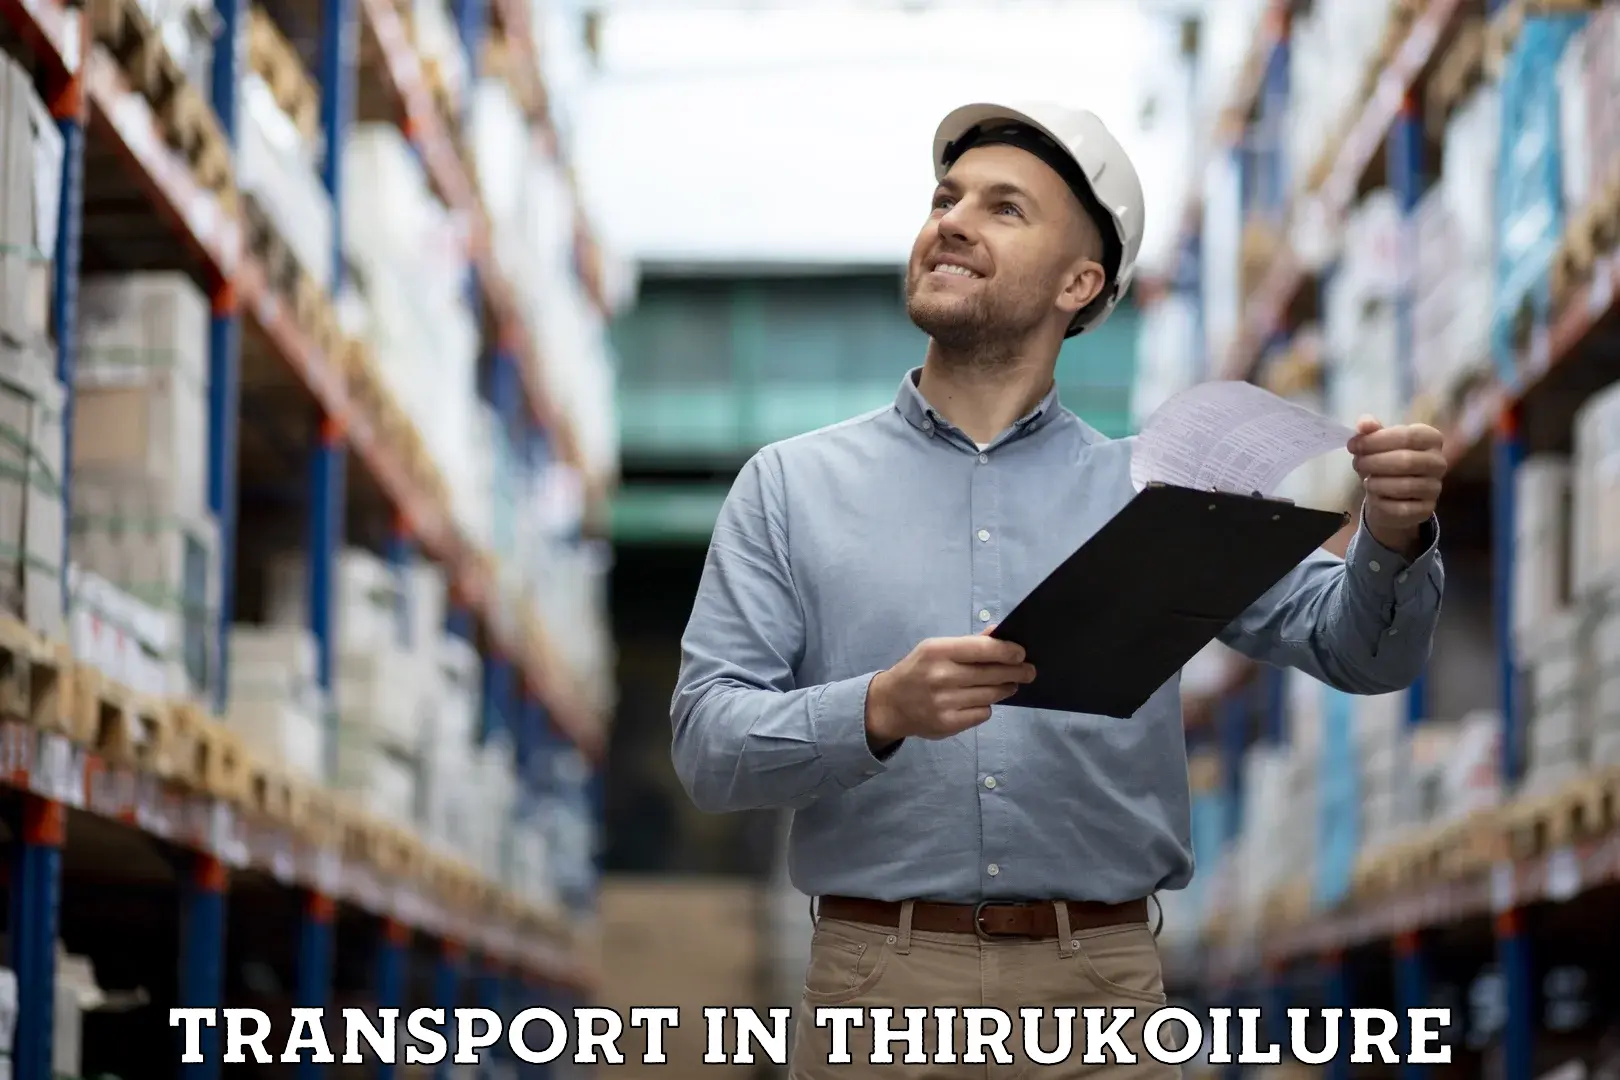 Interstate goods transport in Thirukoilure